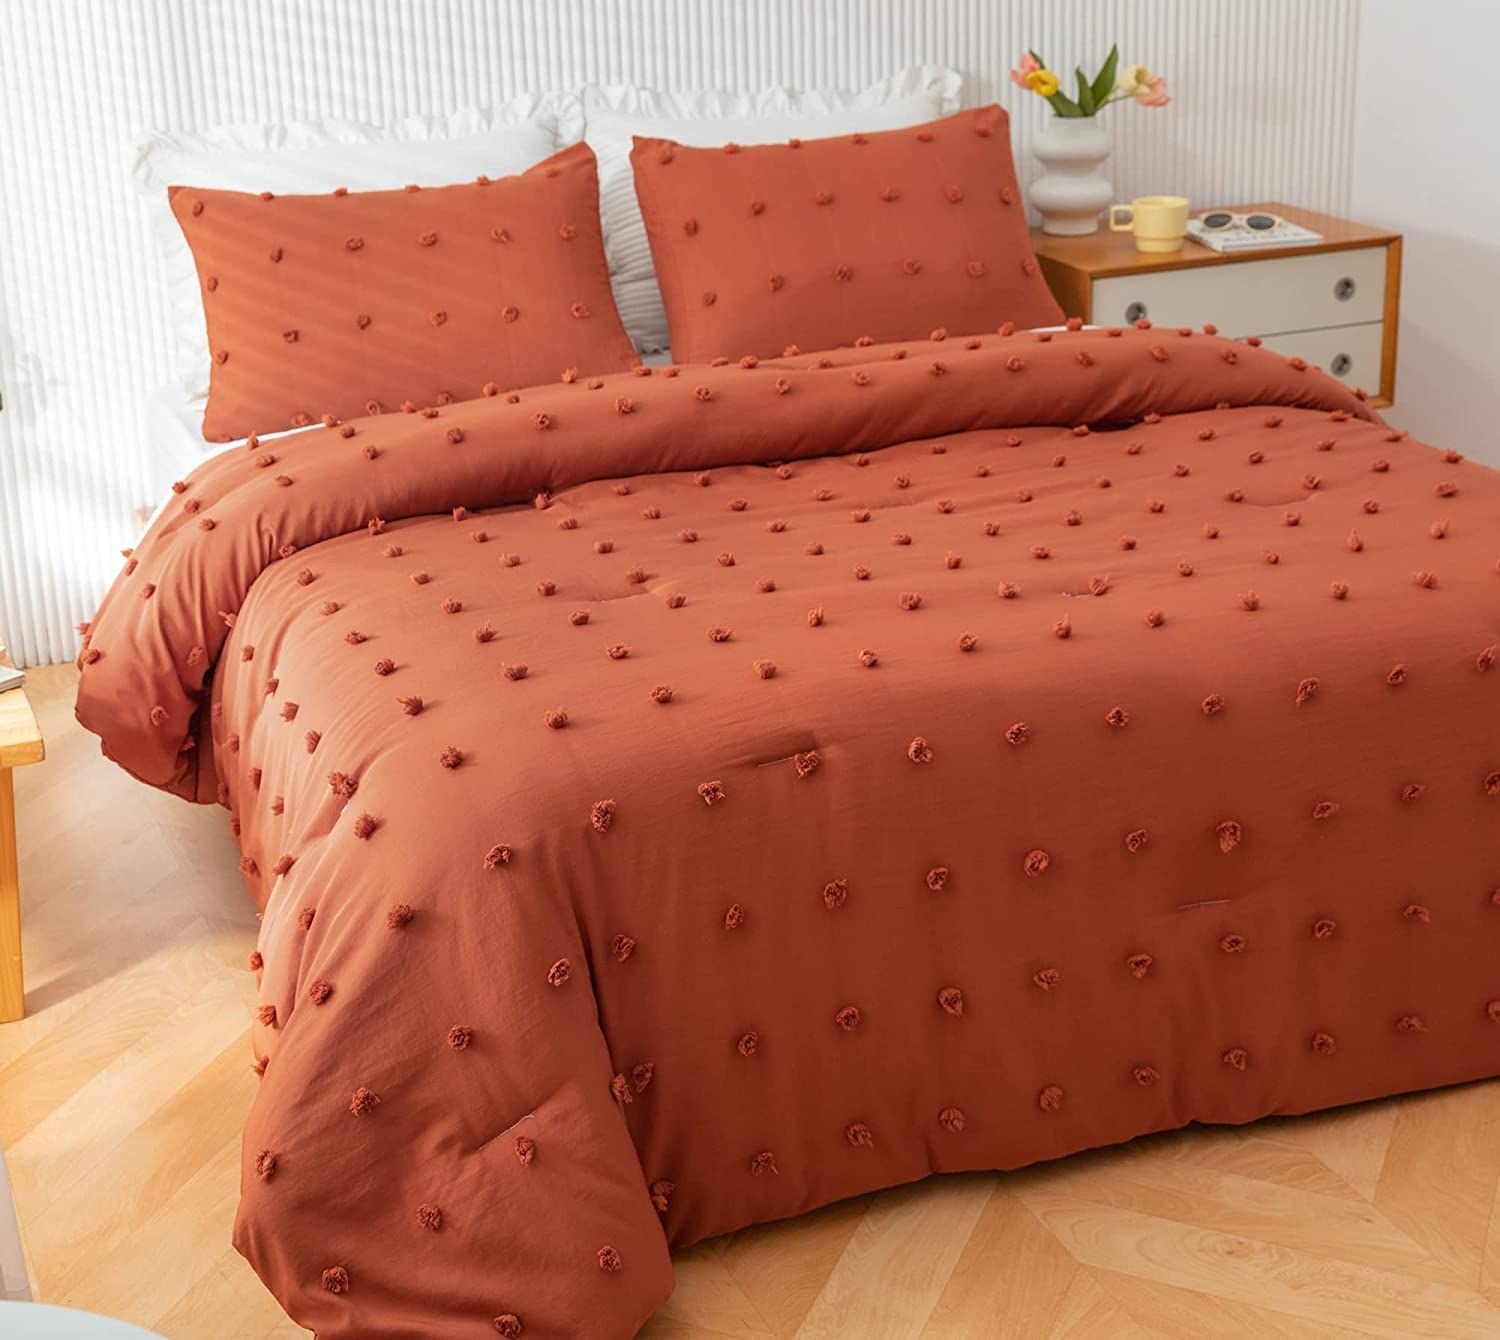 JANZAA Terracotta Comforter Queen Comforter Set Burnt Orange Comforter Boho Comforter Tufted Pom ... | Amazon (US)